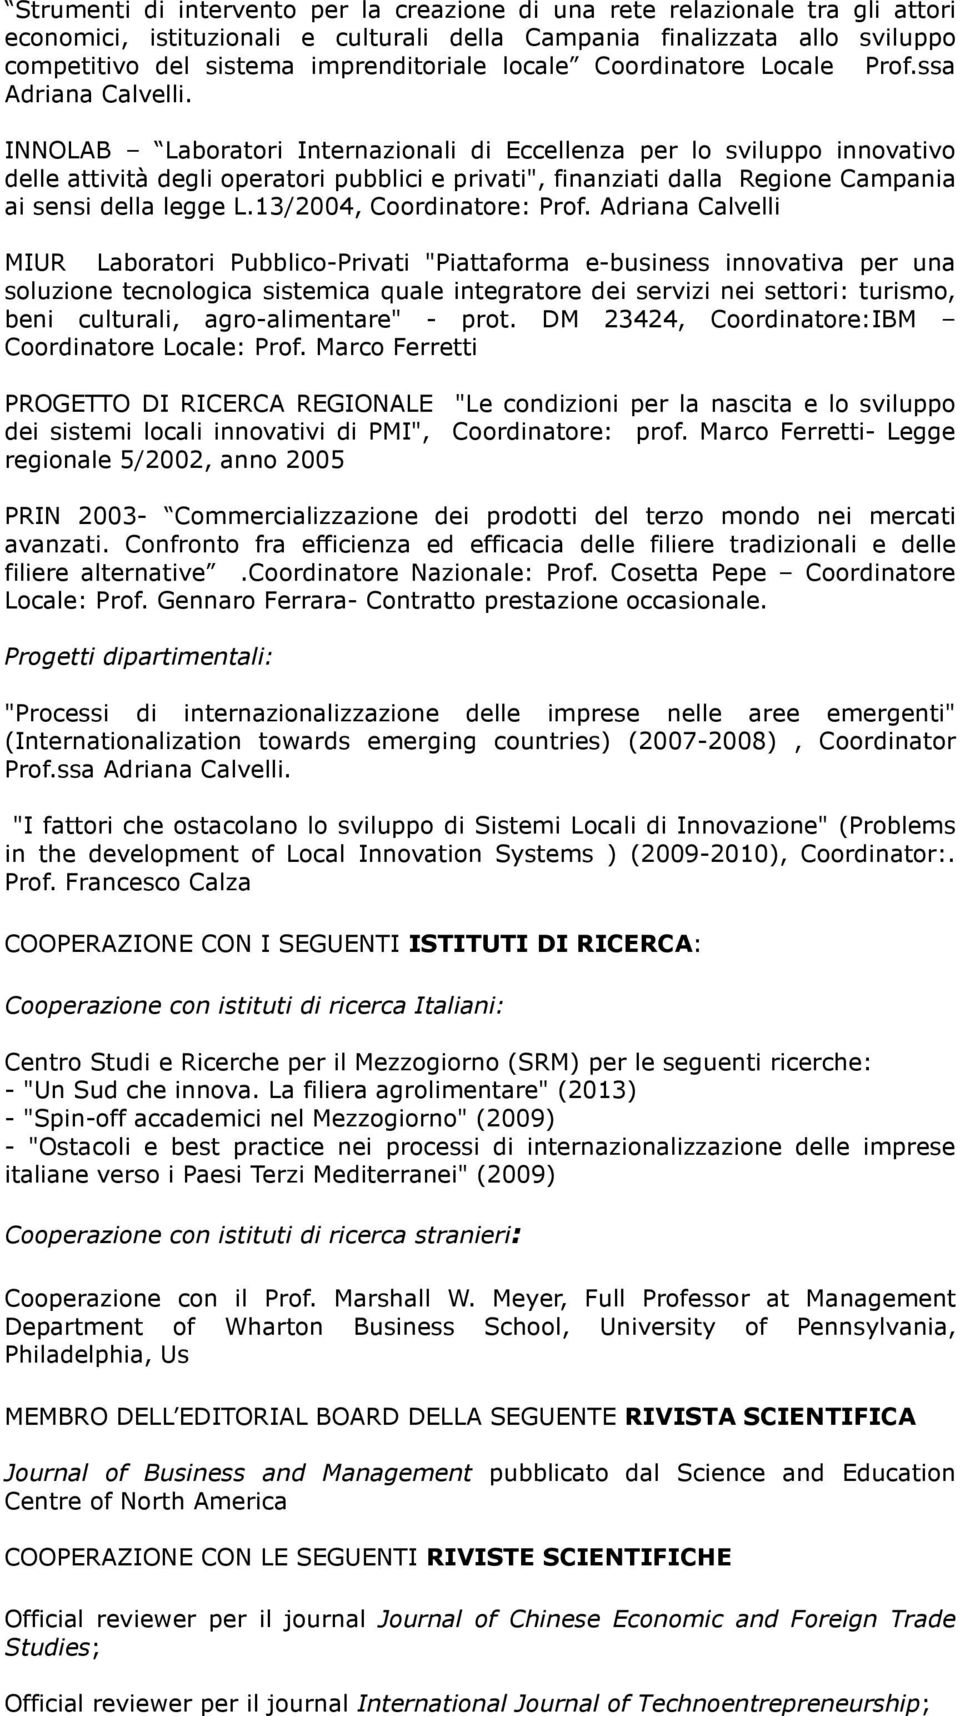 INNOLAB Laboratori Internazionali di Eccellenza per lo sviluppo innovativo delle attività degli operatori pubblici e privati", finanziati dalla Regione Campania ai sensi della legge L.